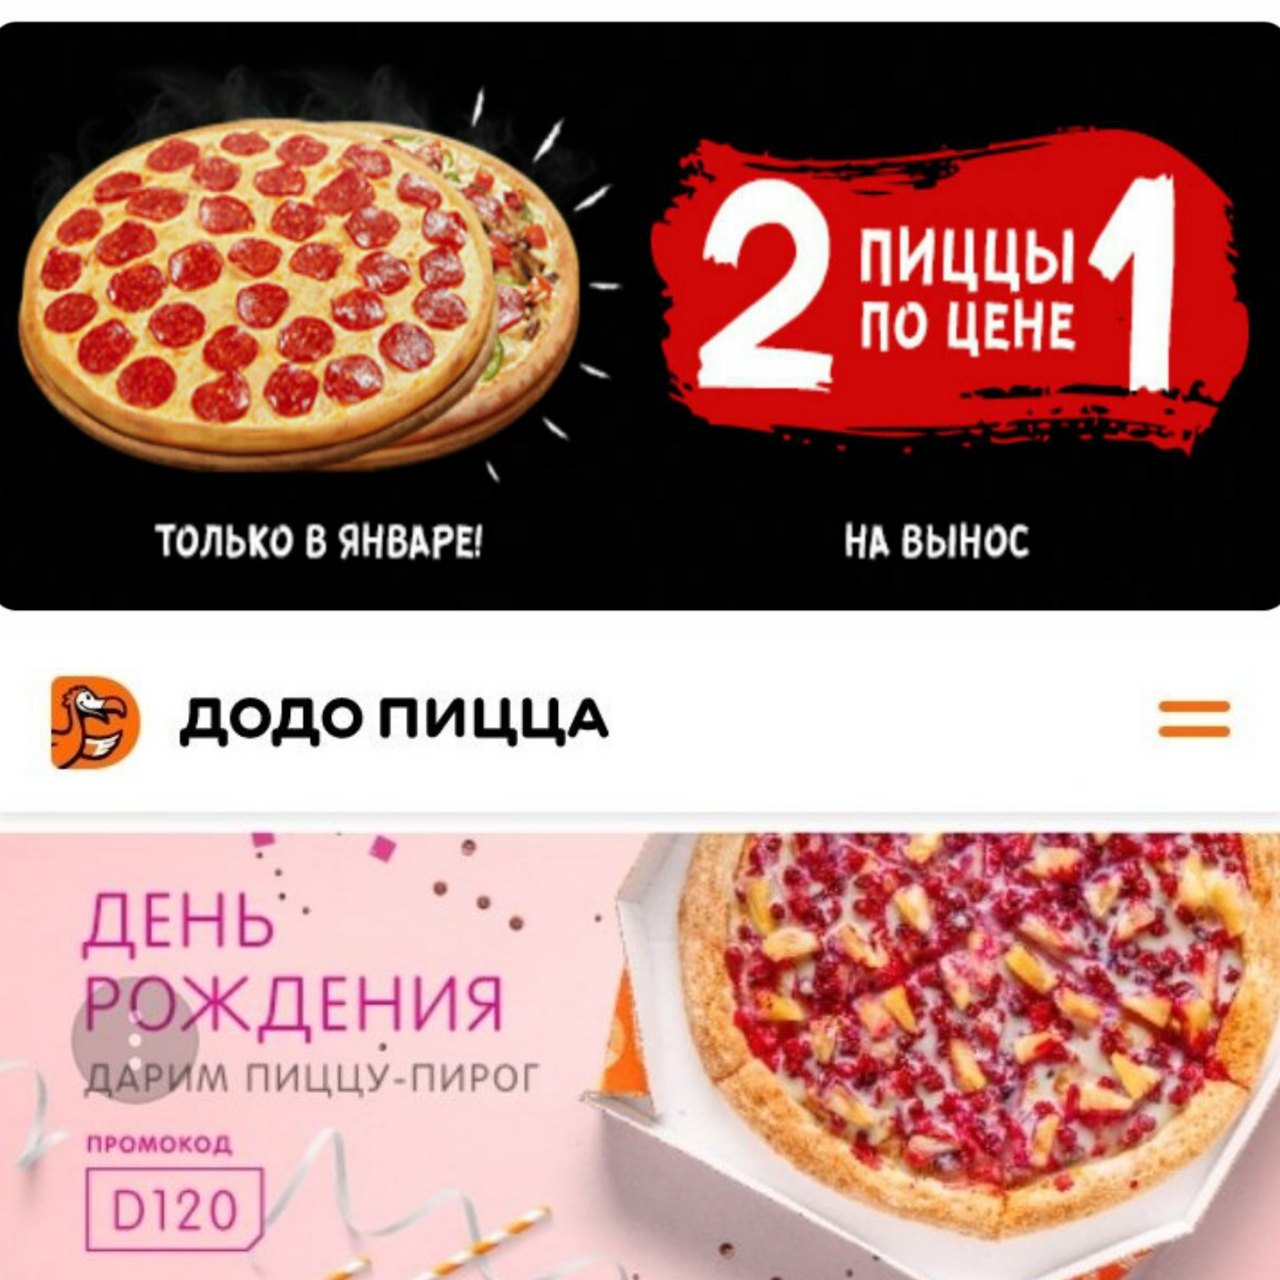 Заказать пиццу по акции в москве. Промокод Додо день рождения. Пицца в подарок на день рождения. Промокод на пиццу. Промокод на день рождения.